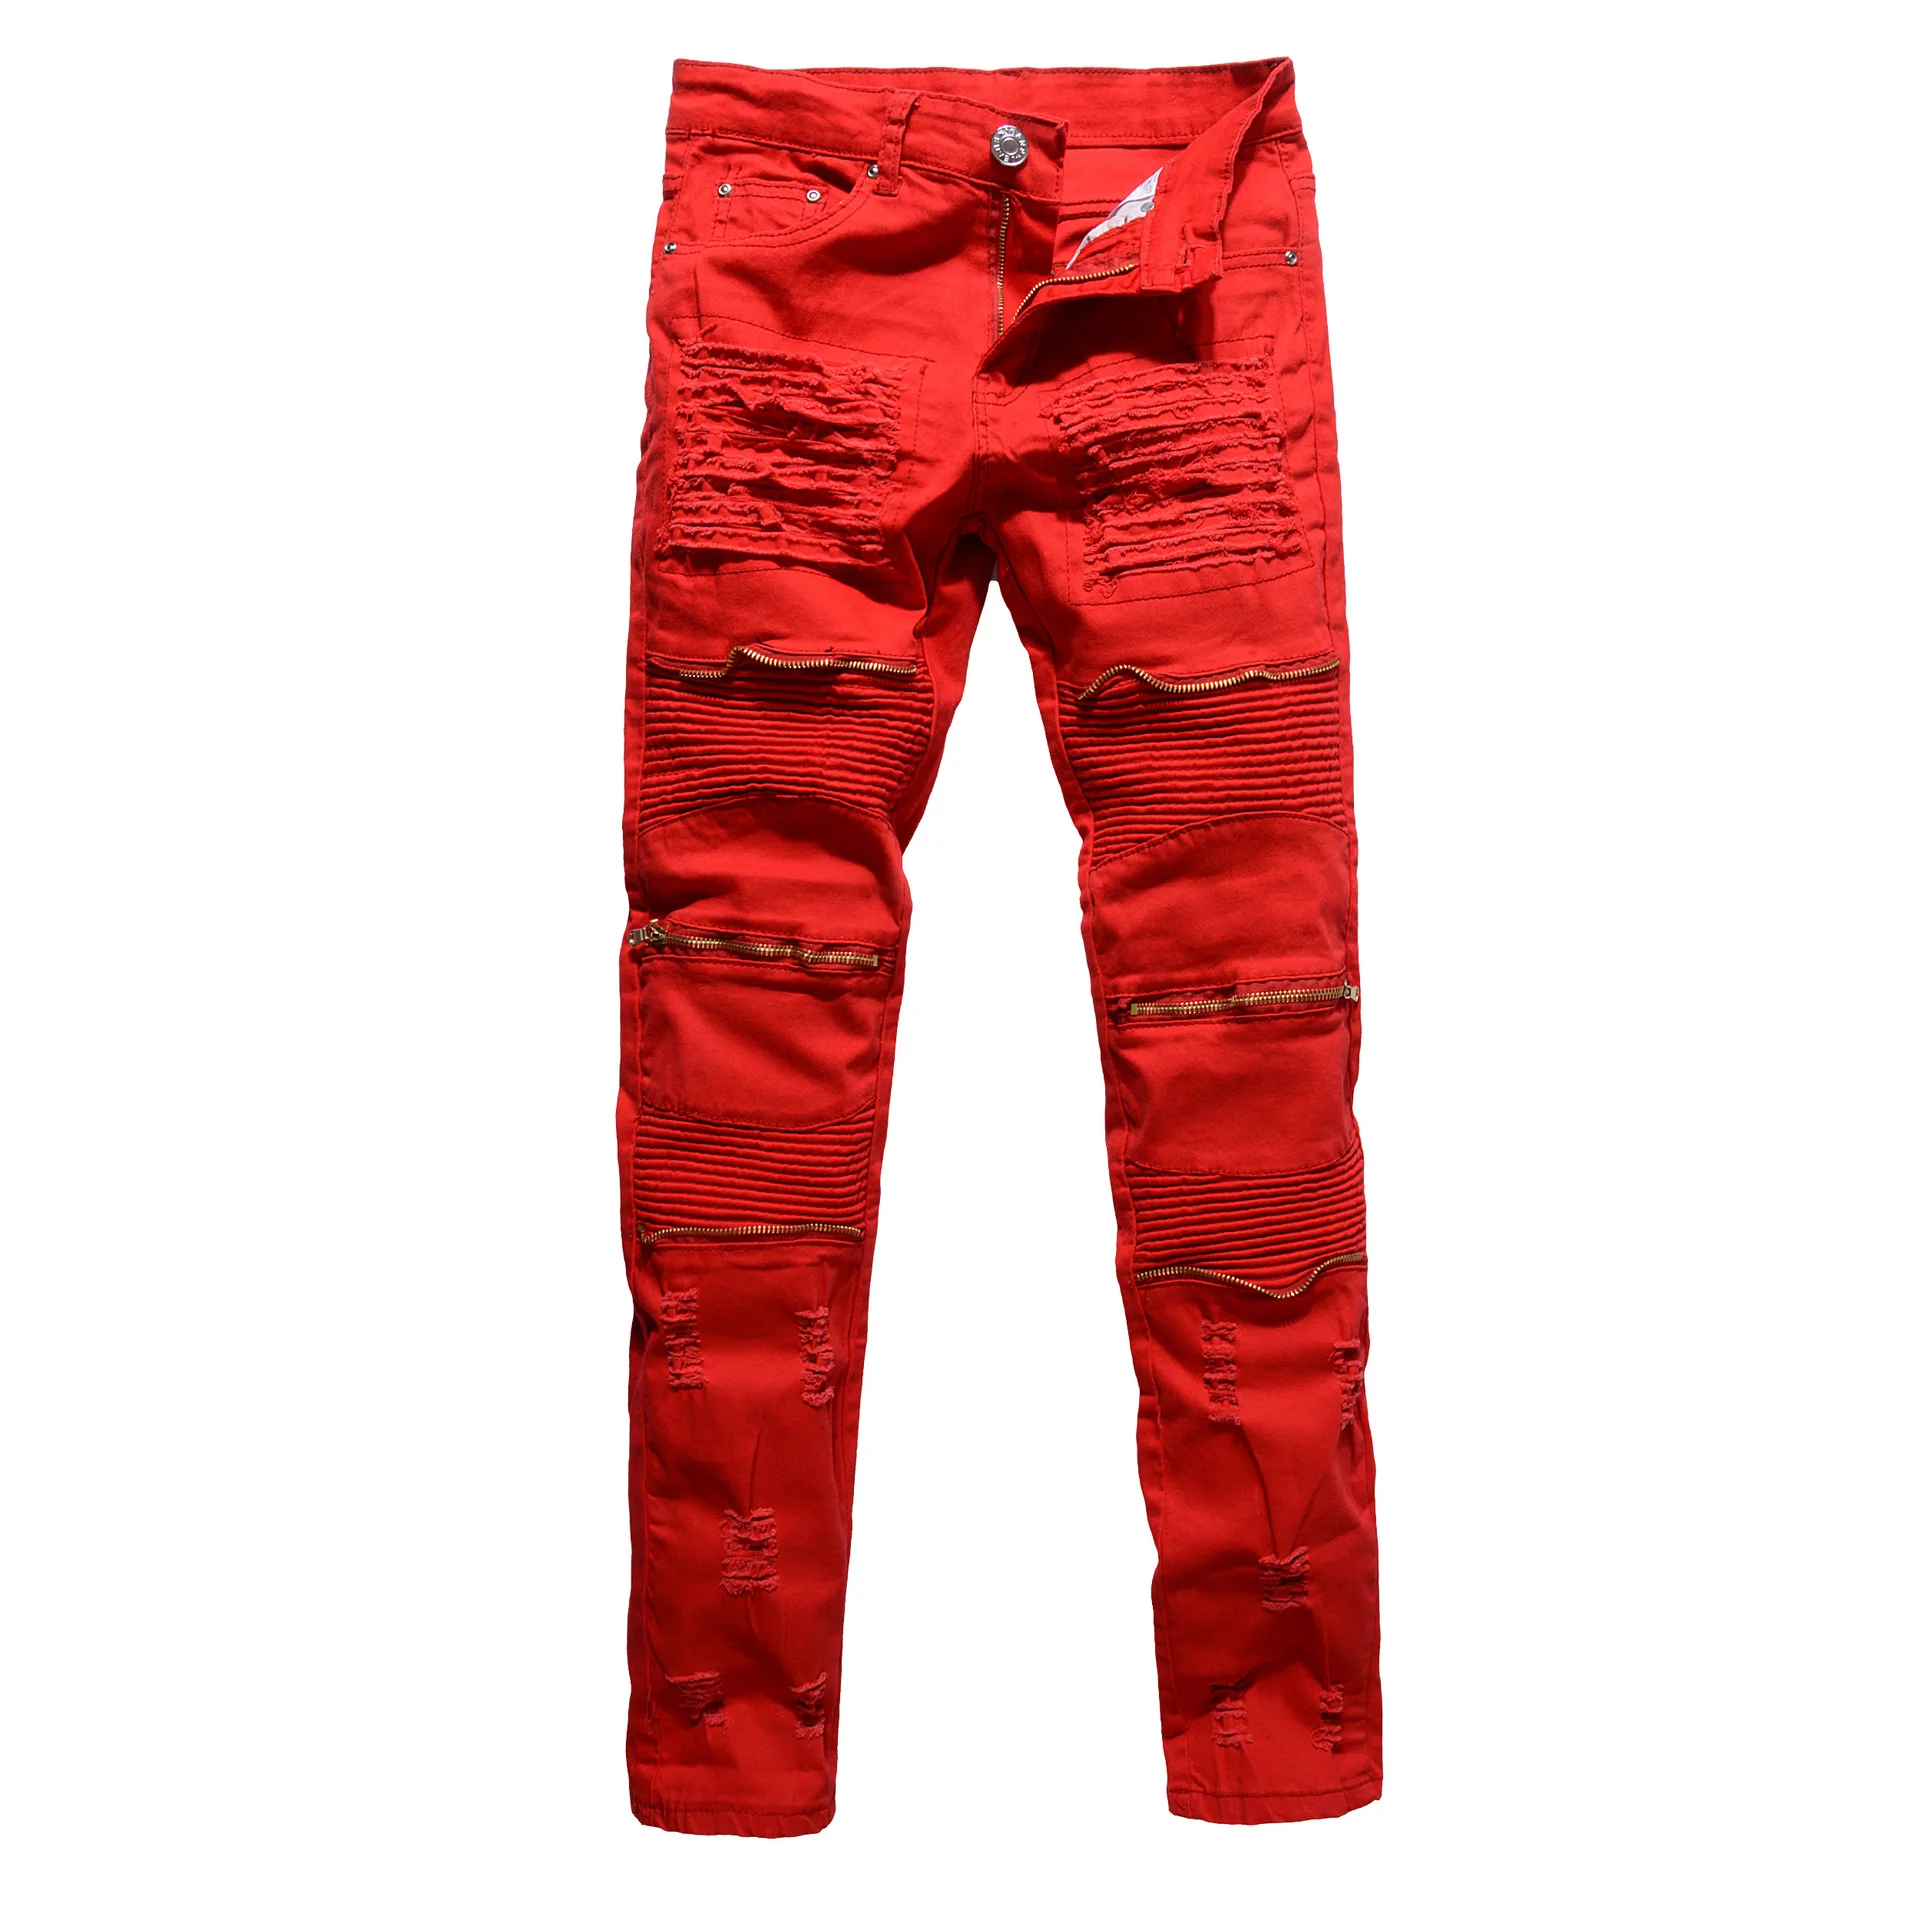 Мужские байкерские джинсы для клуба 2020 белые/красные/черные брендовые